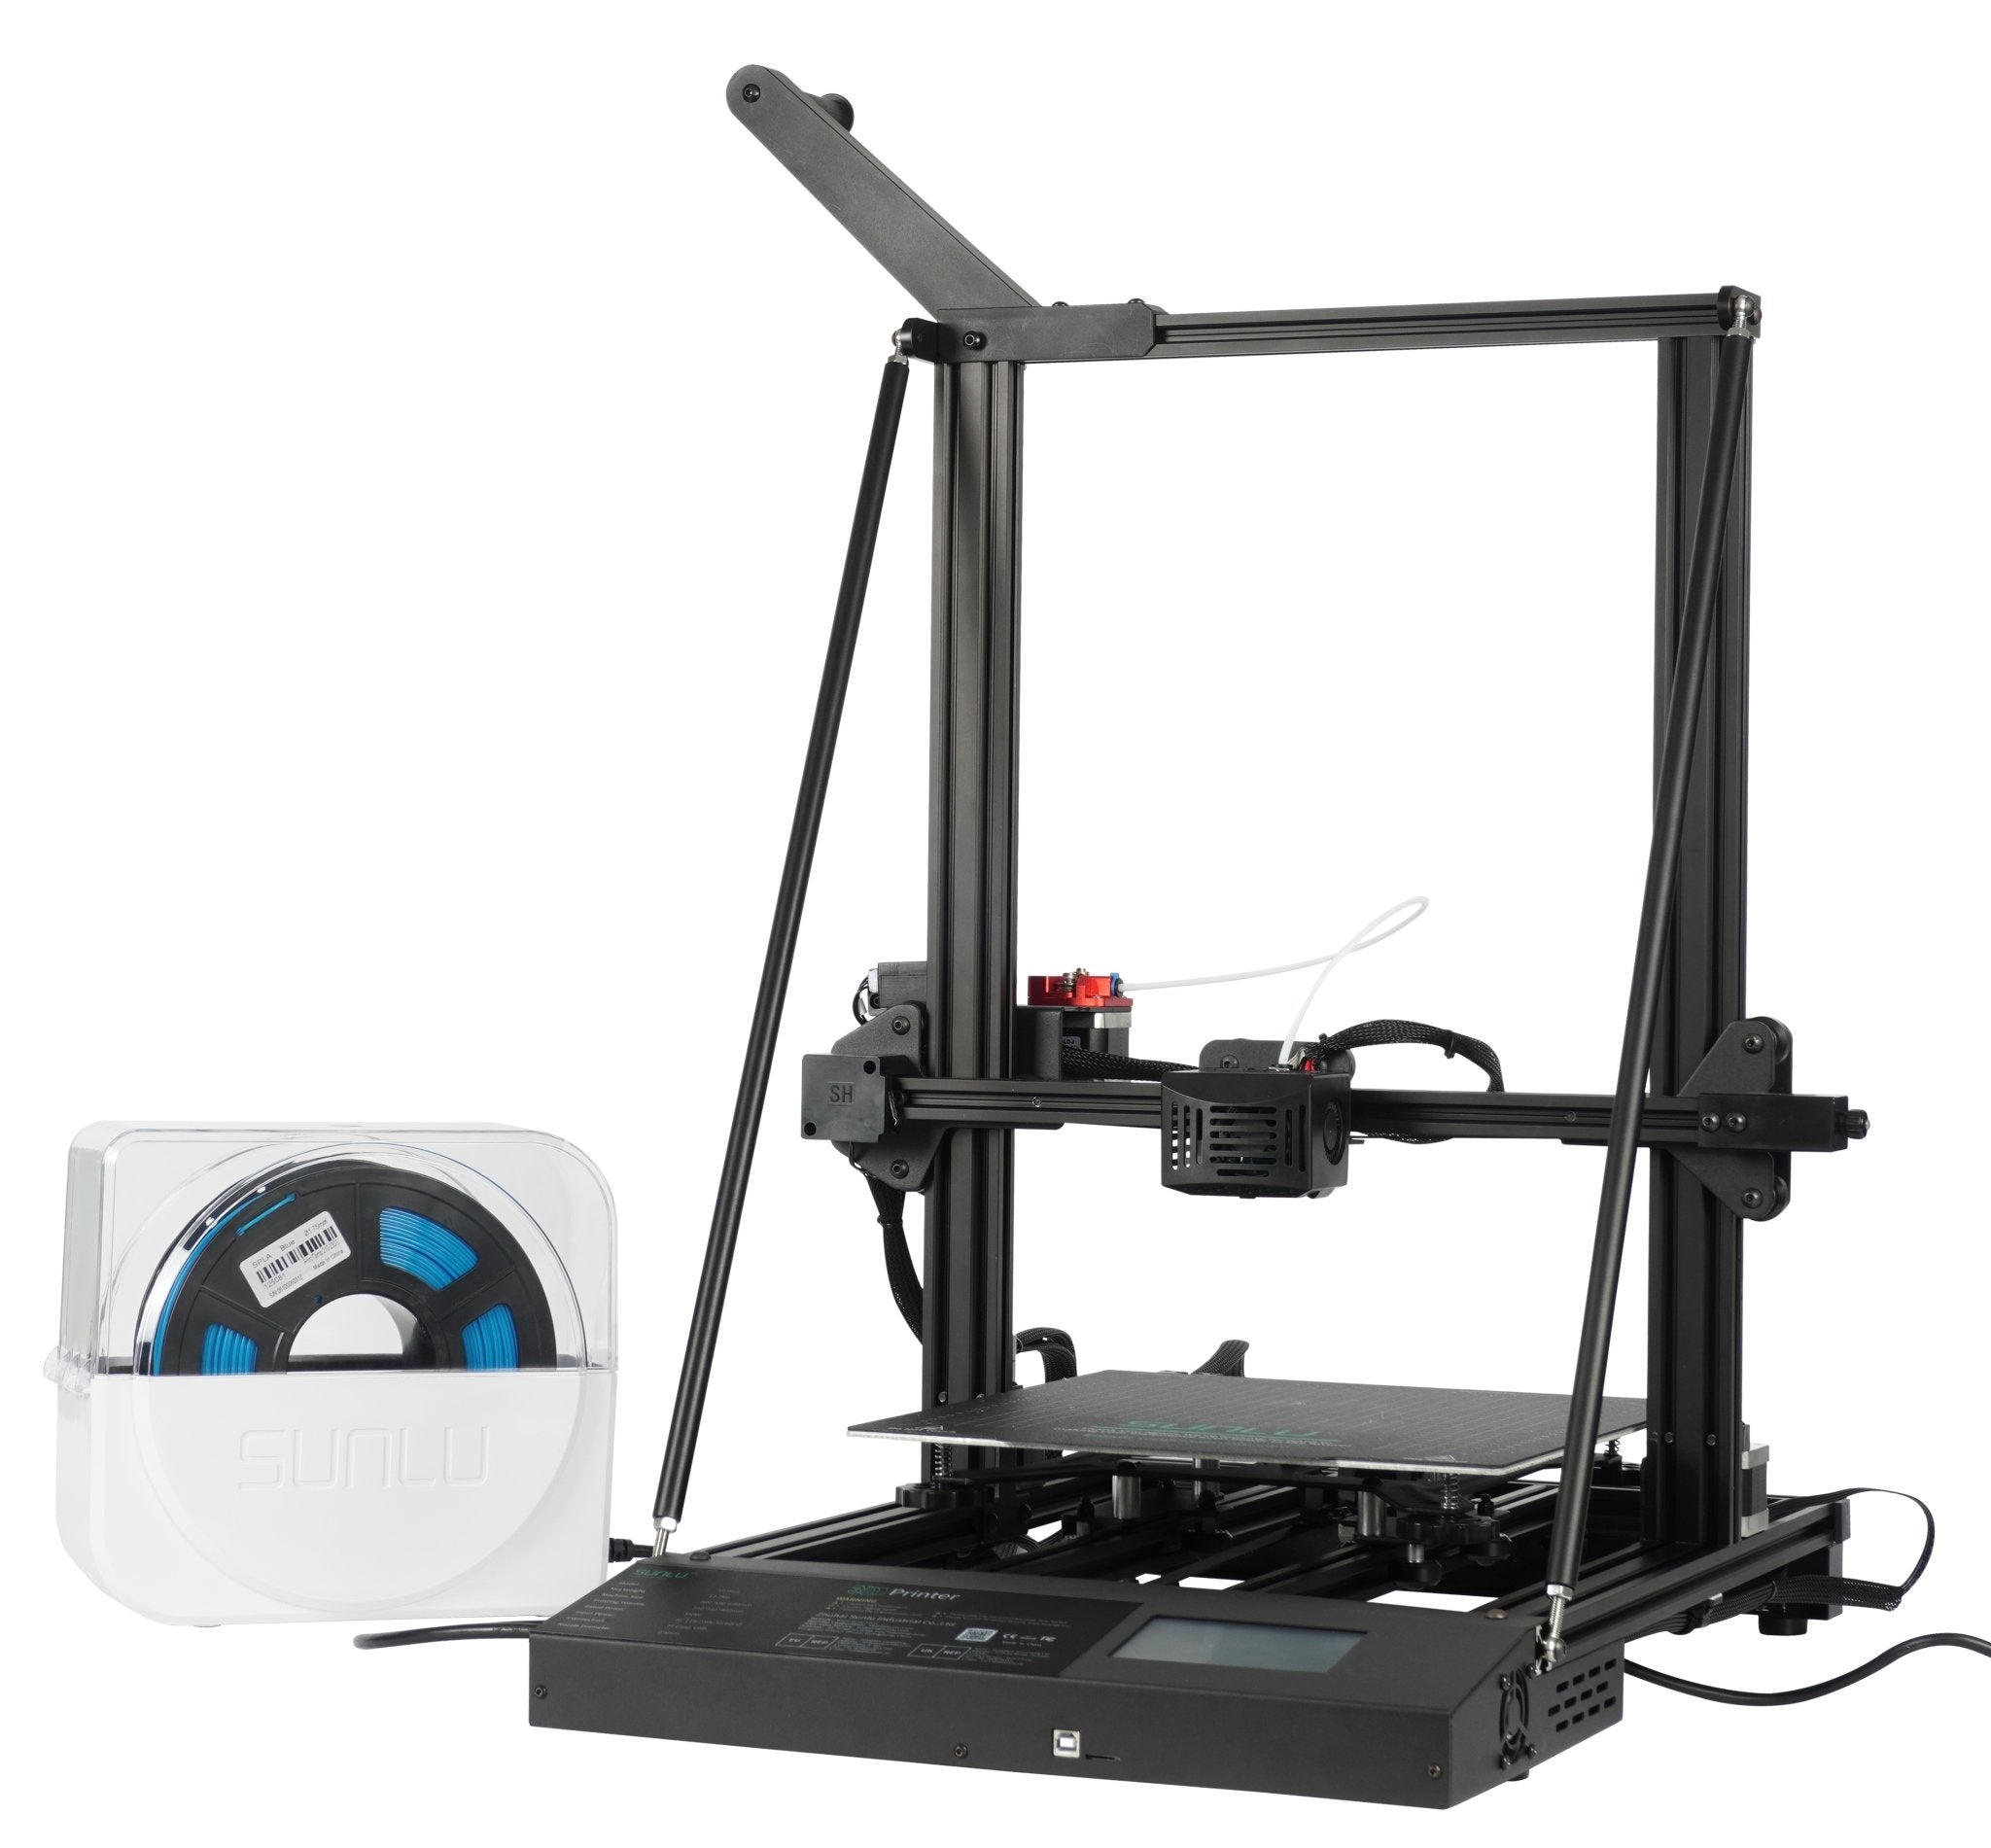 2022 Upgraded SUNLU S9+ 3D Printer, Large Size FDM 3D Printer with FilaDryer S1 - SUNLU Official Online Store£üBest 3D Filament Best Selling Supplier & Manufacturer